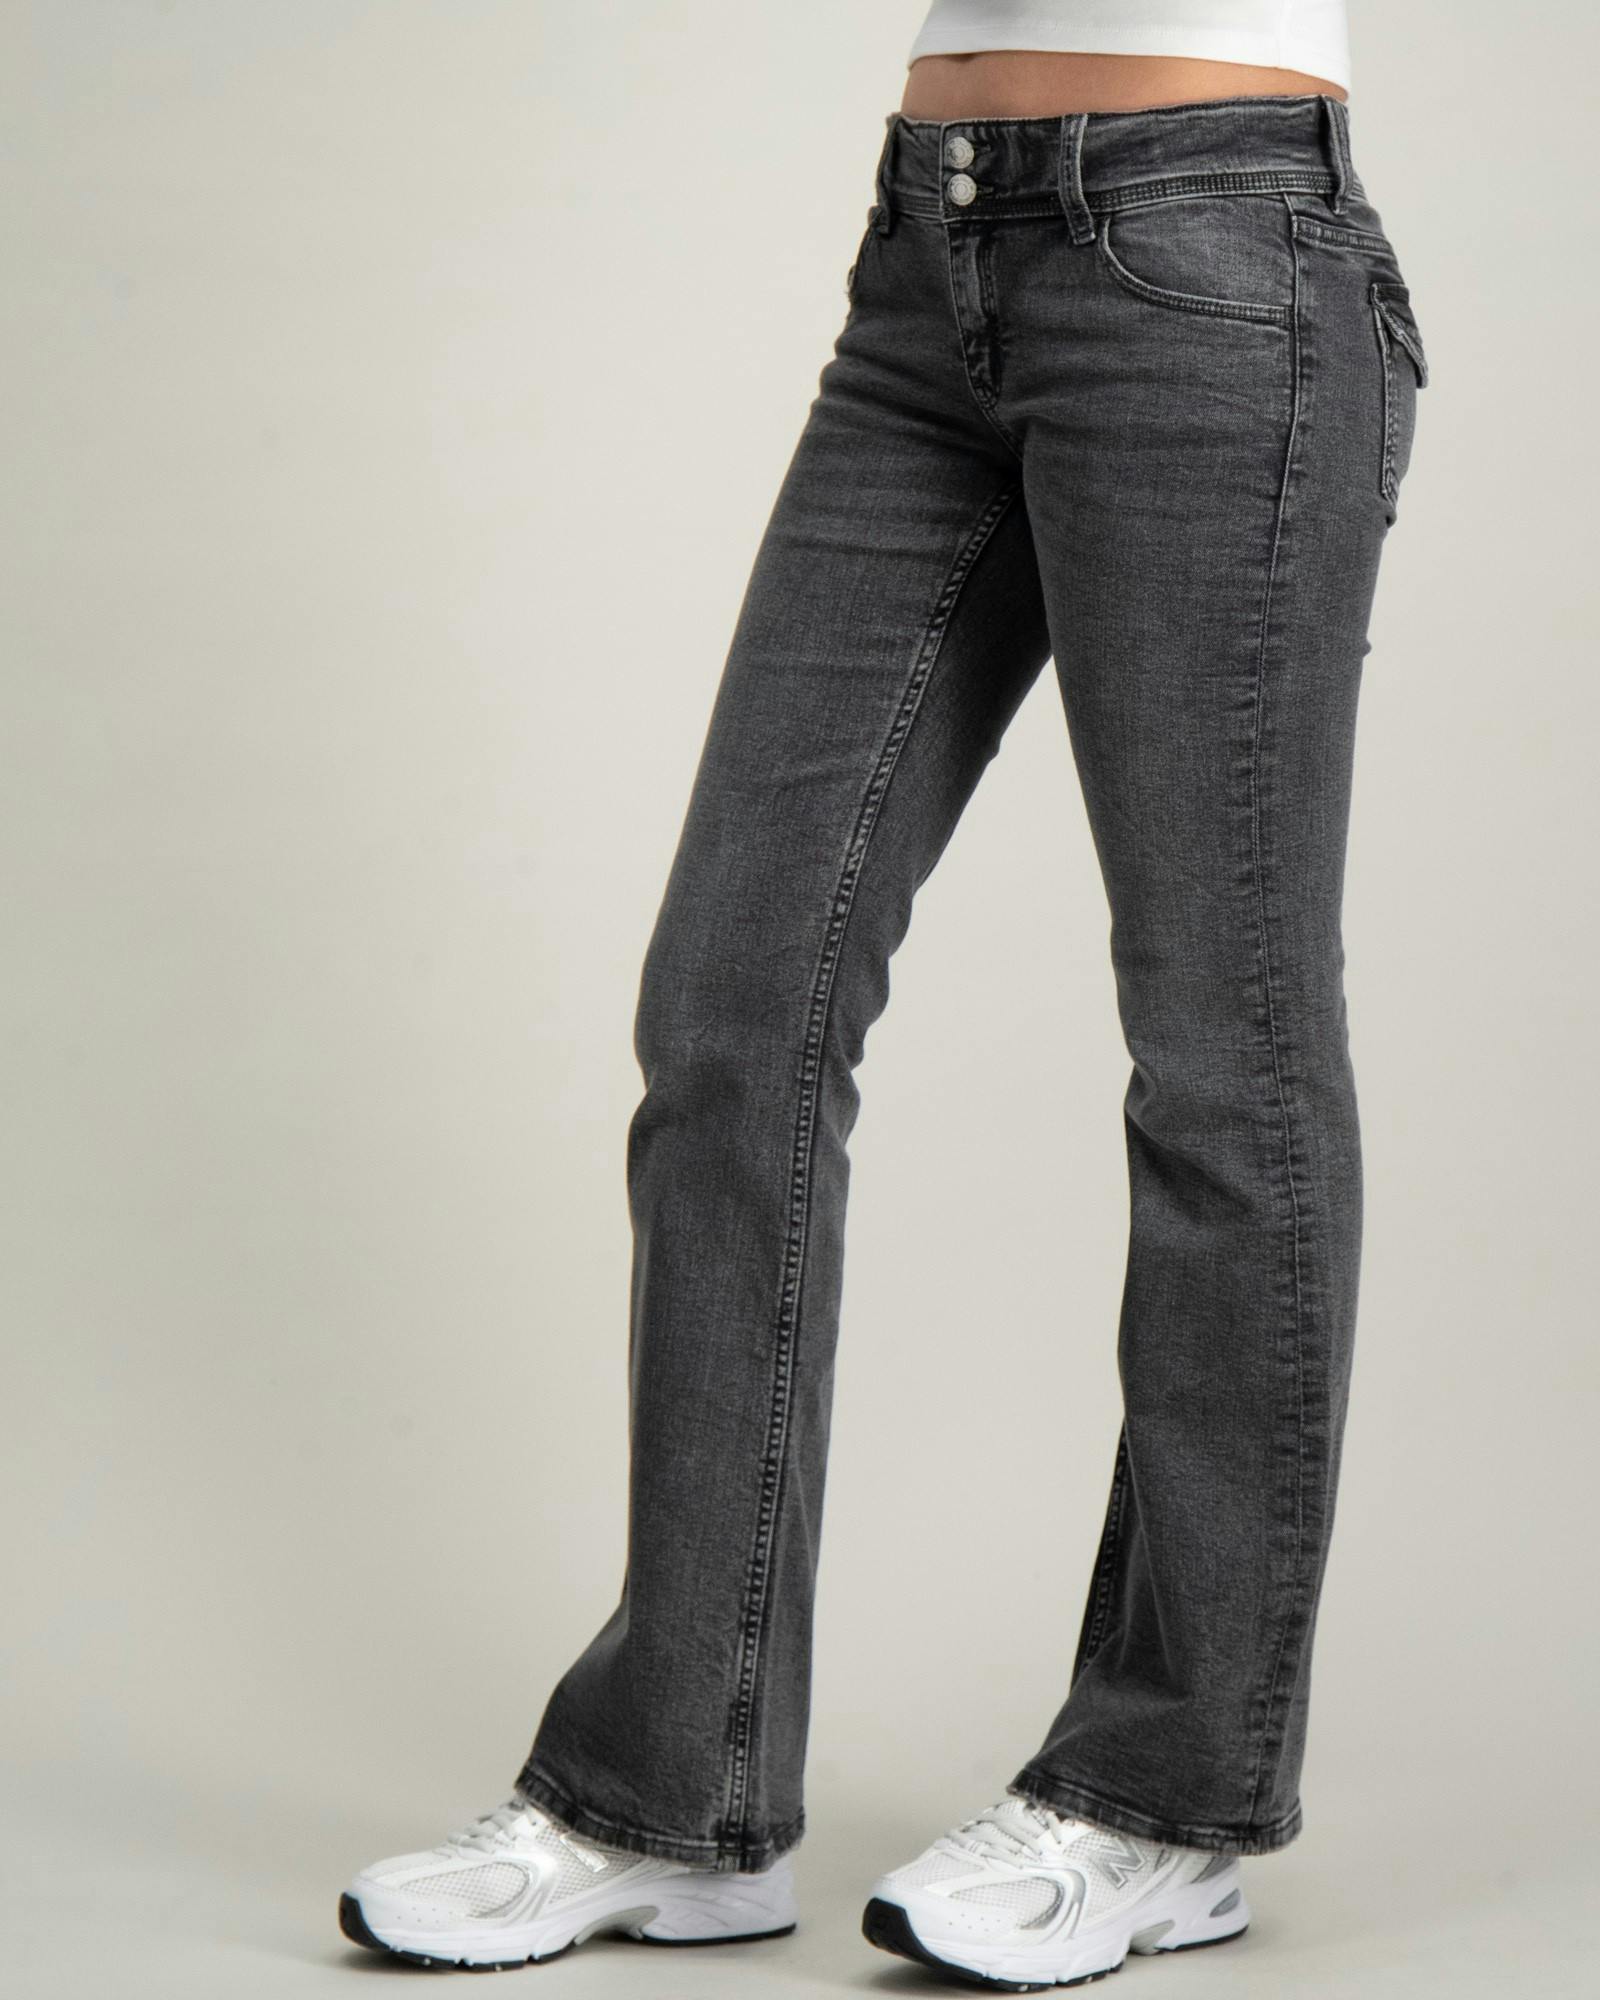 Flare pocket jeans